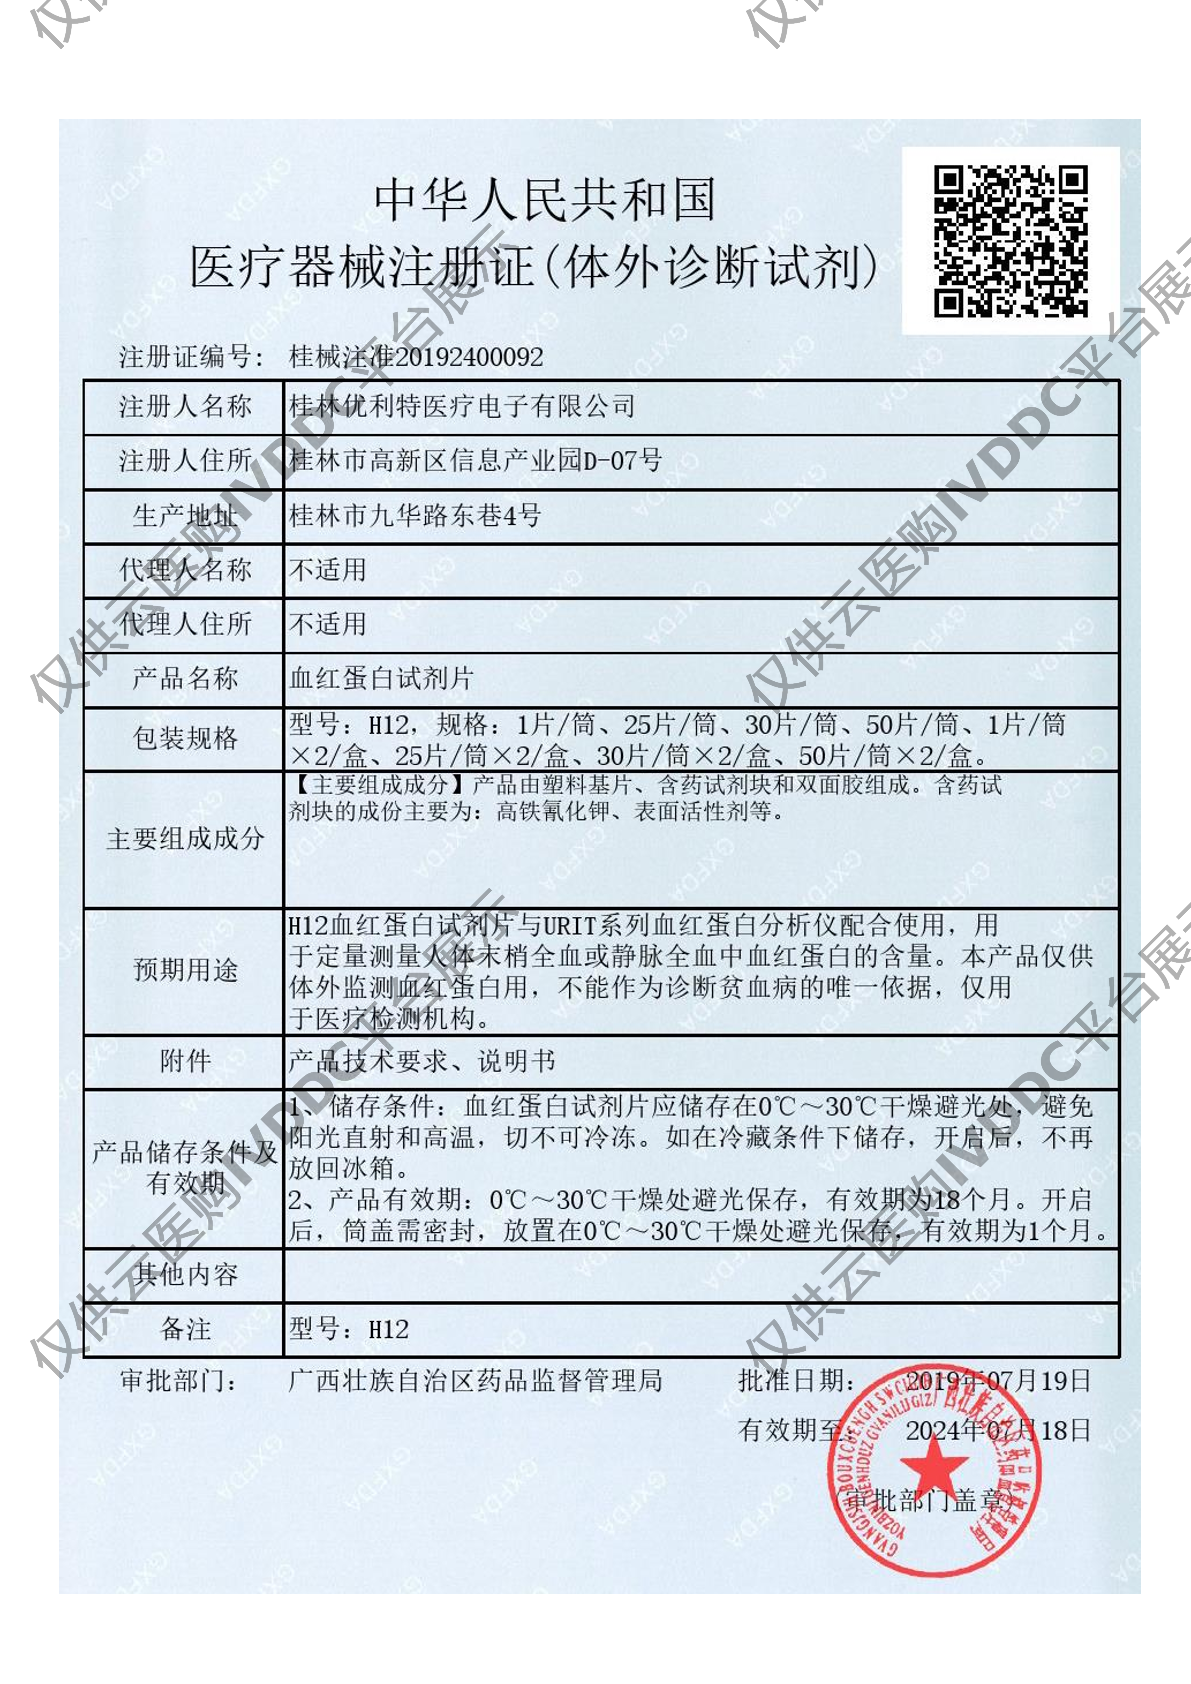 【优利特】血红蛋白试剂片(URIT H12)注册证